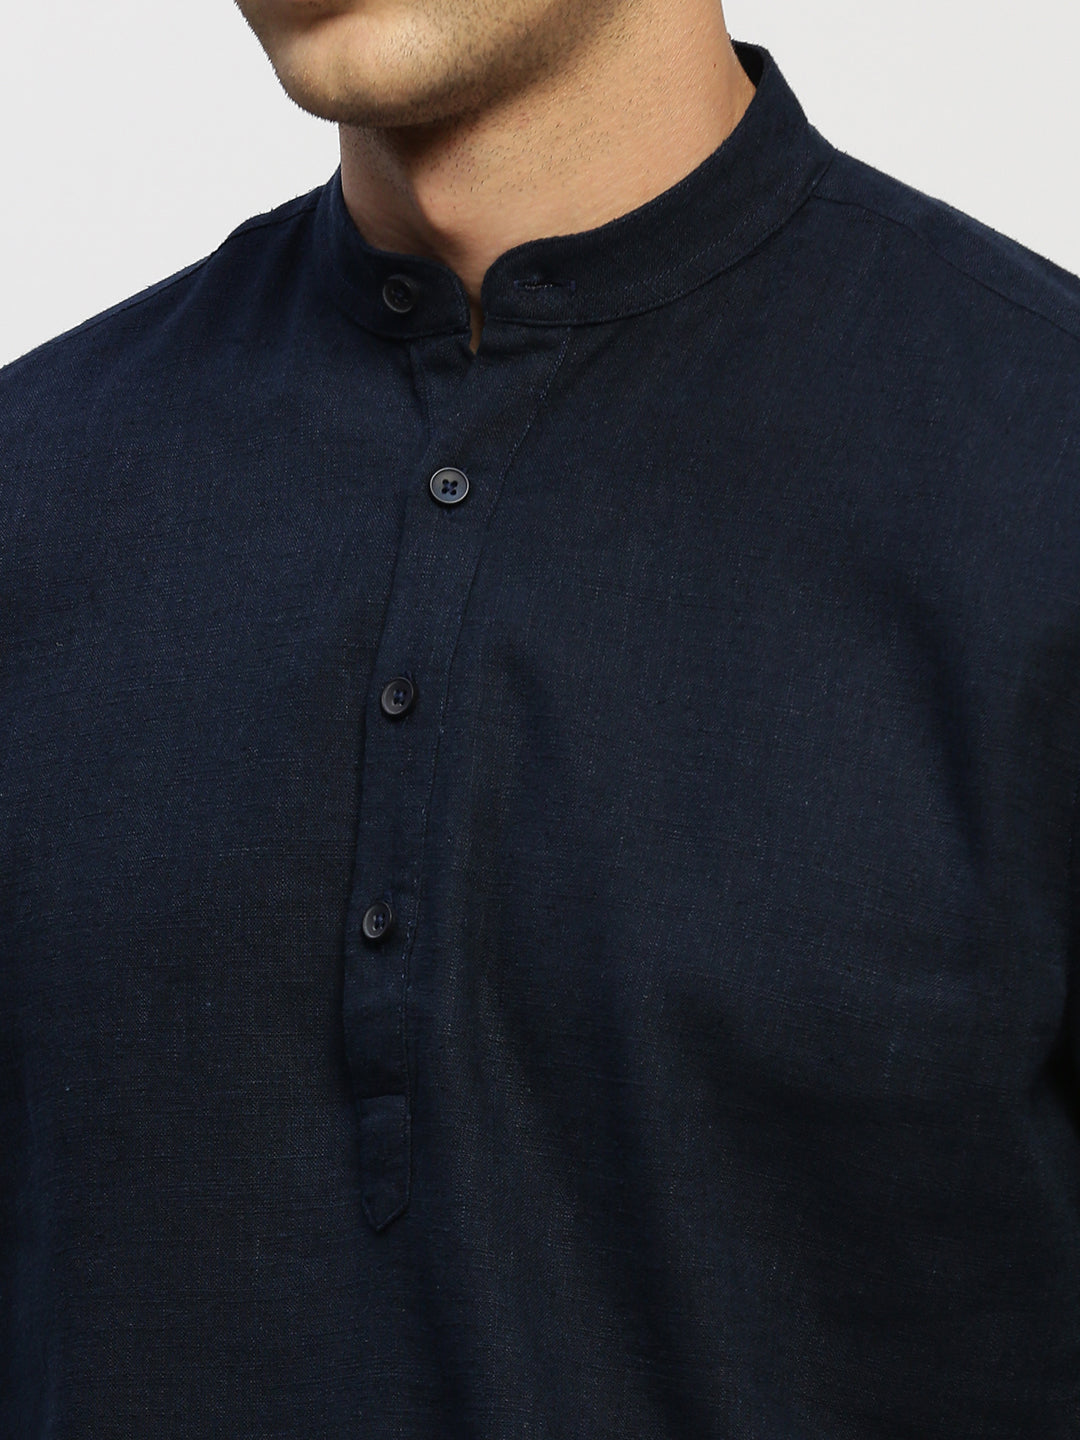 Men's Navy Blue Mandarin Collar Solid Kurta